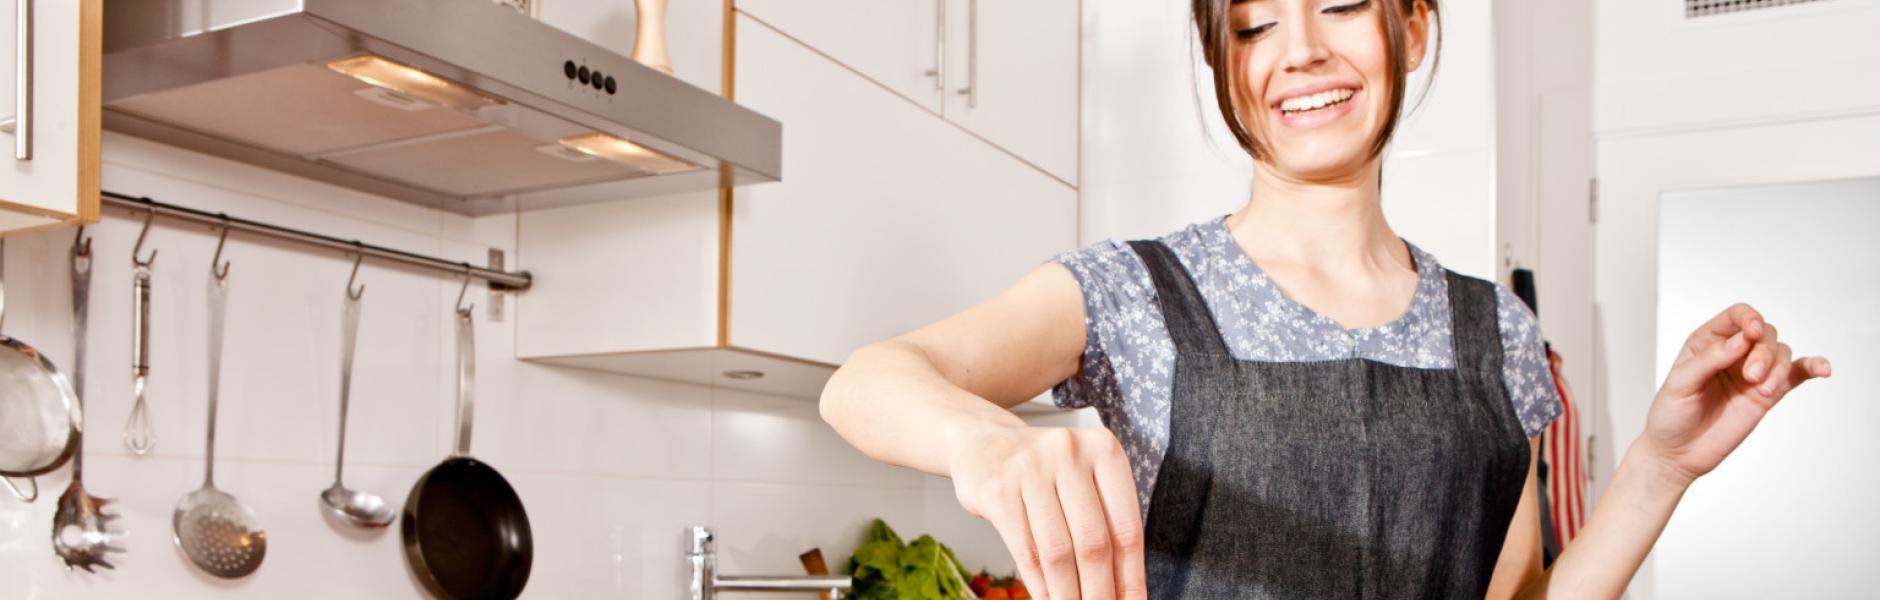 Πώς μπορεί η μαγειρική να σας βοηθήσει να ξεπεράσετε μια δύσκολη μέρα